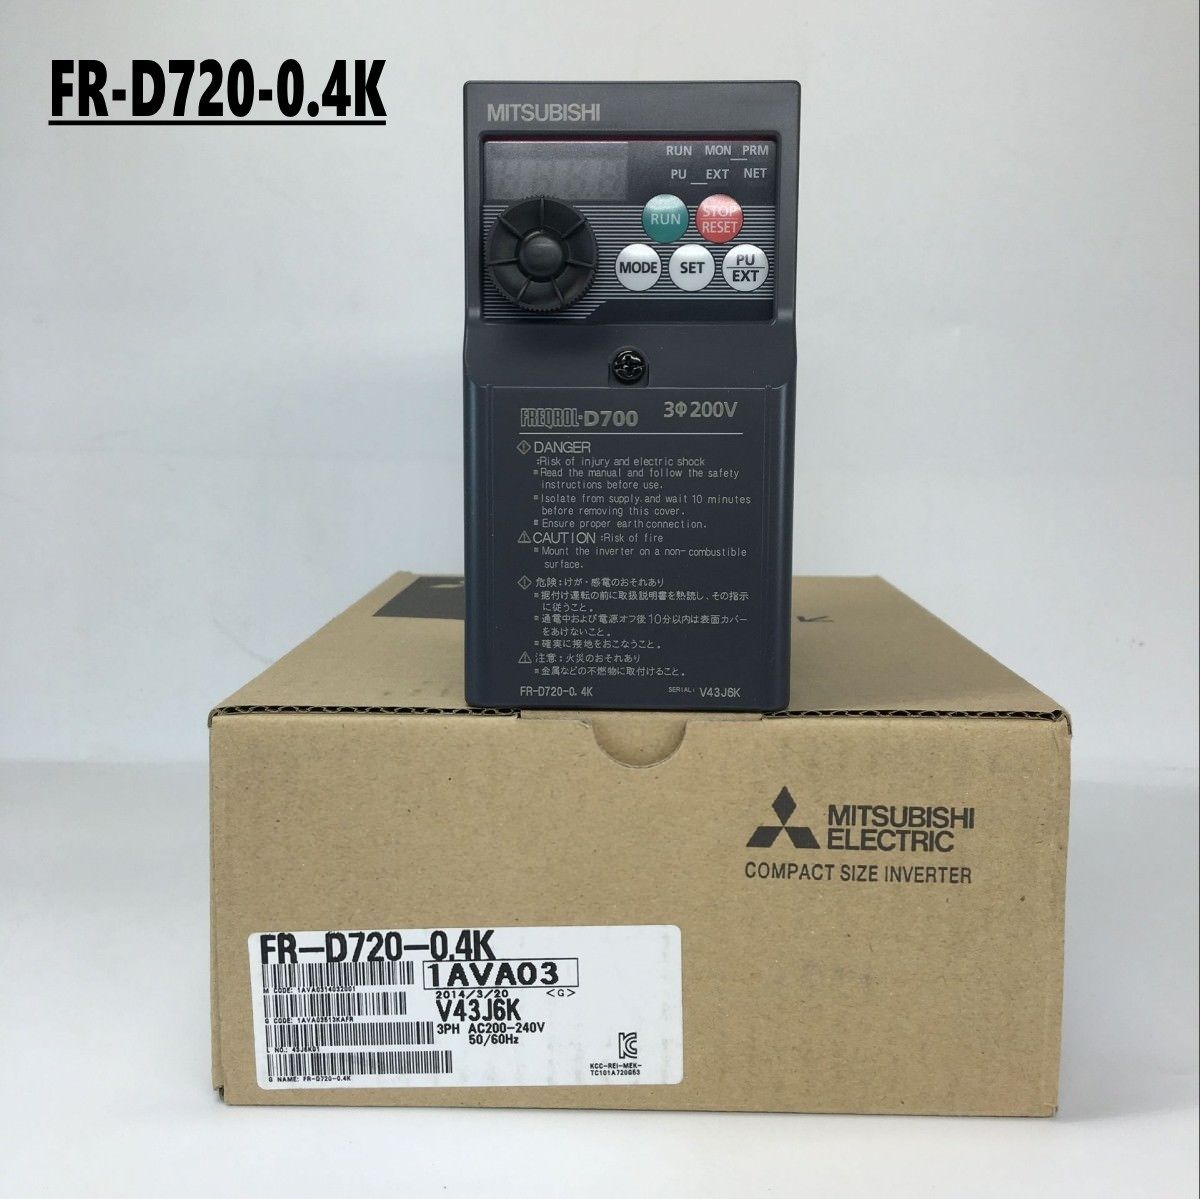 New MITSUBISHI Inverter FR-D720-0.4K IN BOX FRD720 0.4K